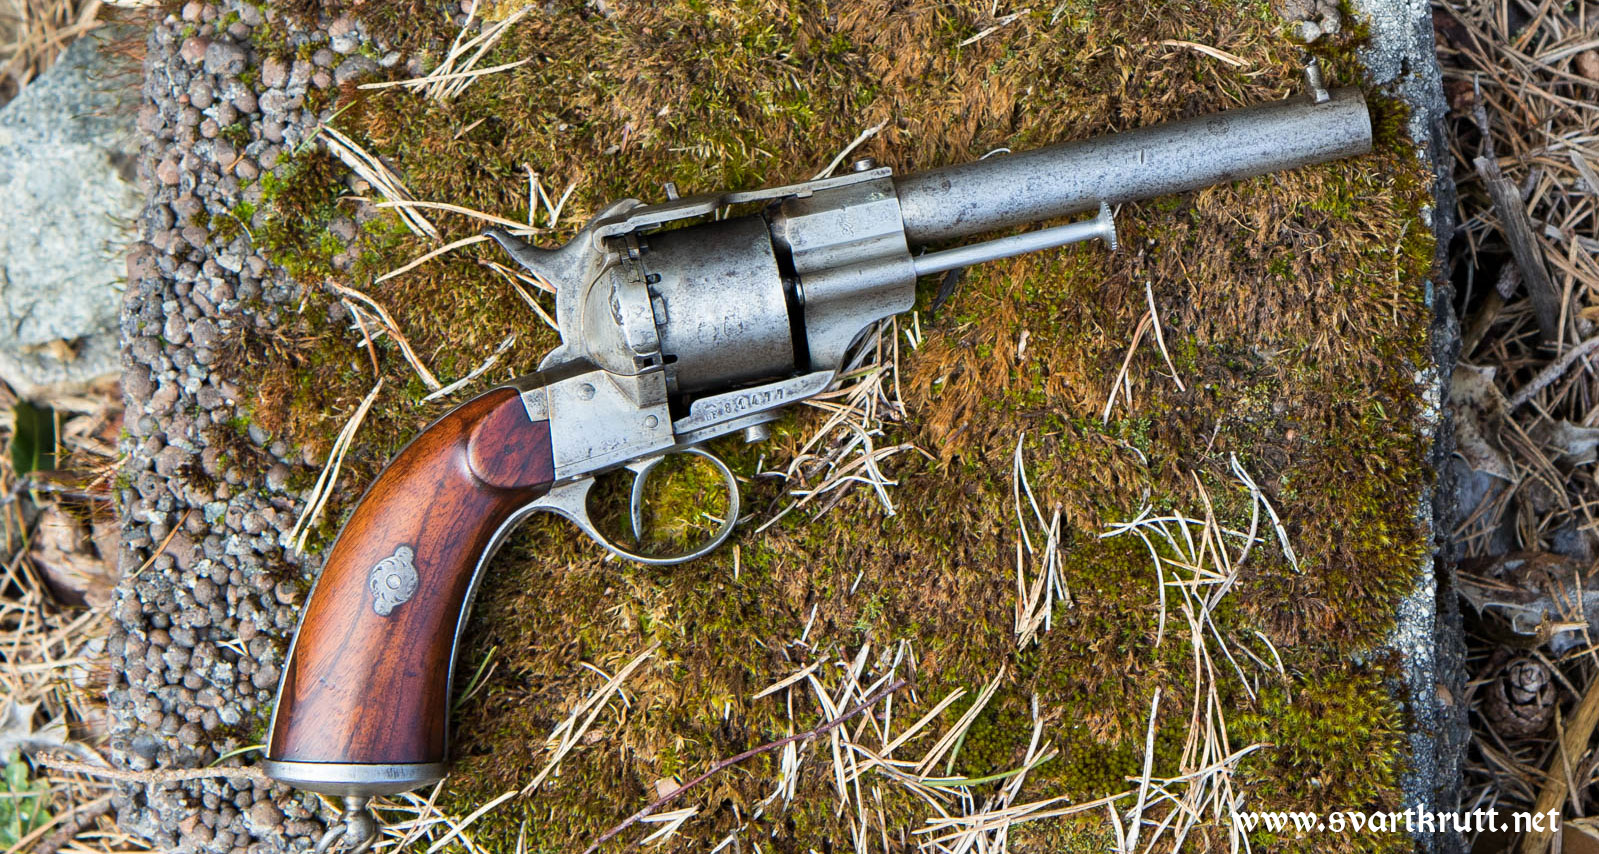 lefaucheux revolver octagon barrel 9mm pinfire